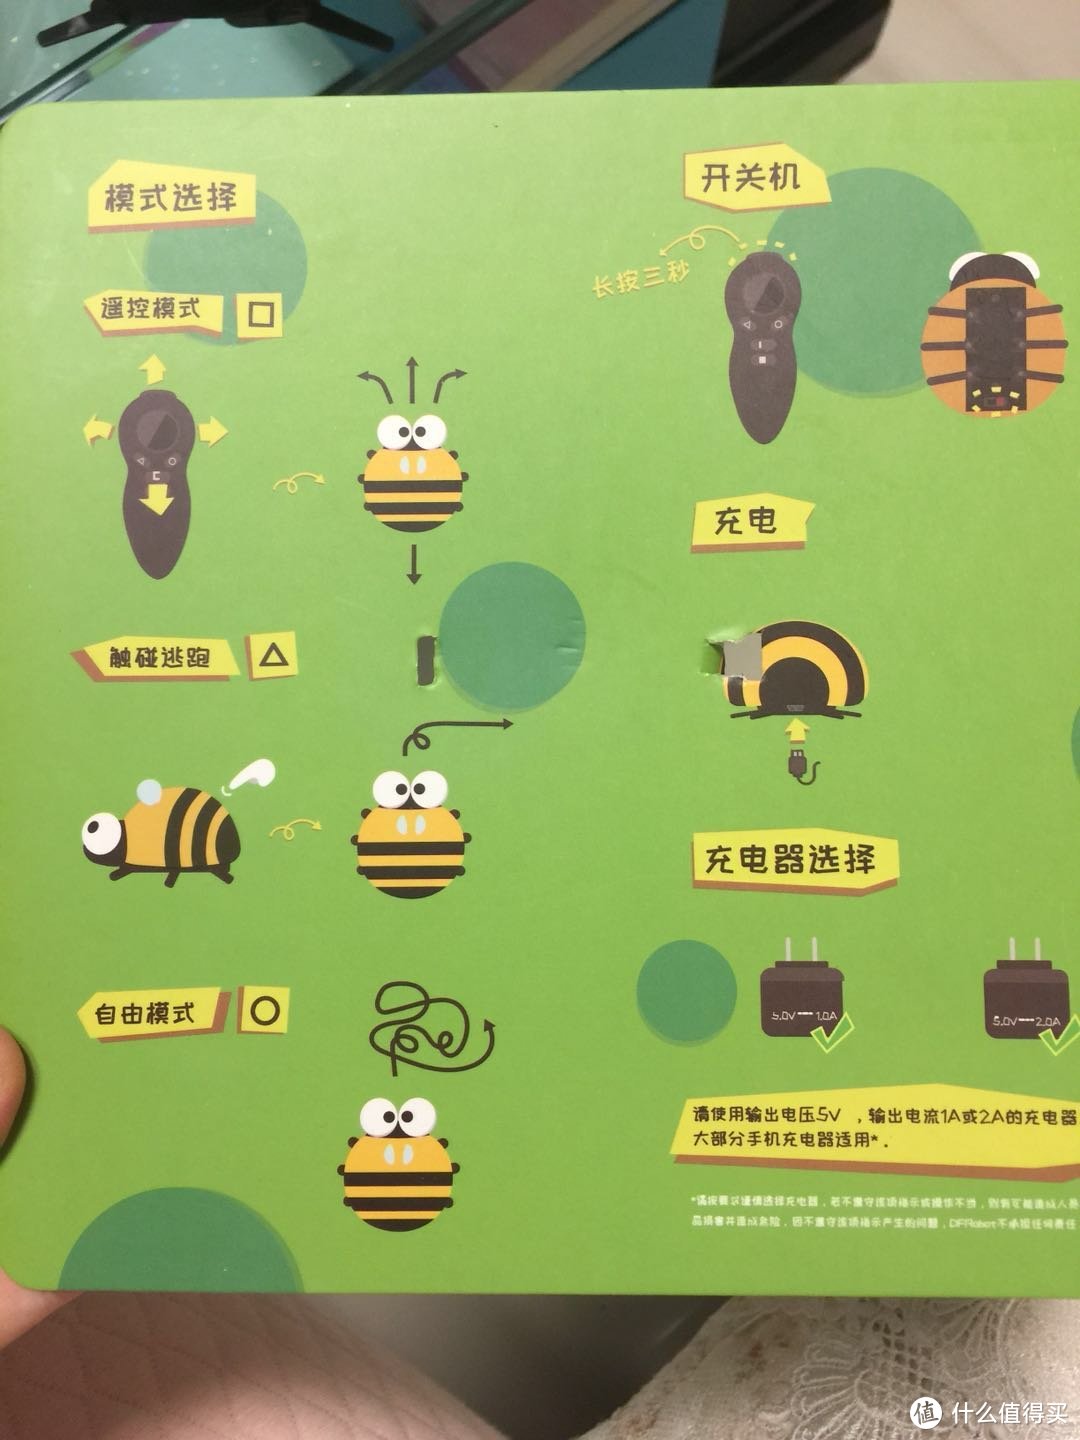 萌萌哒小蜜蜂-逗逗虫机器人轻众测